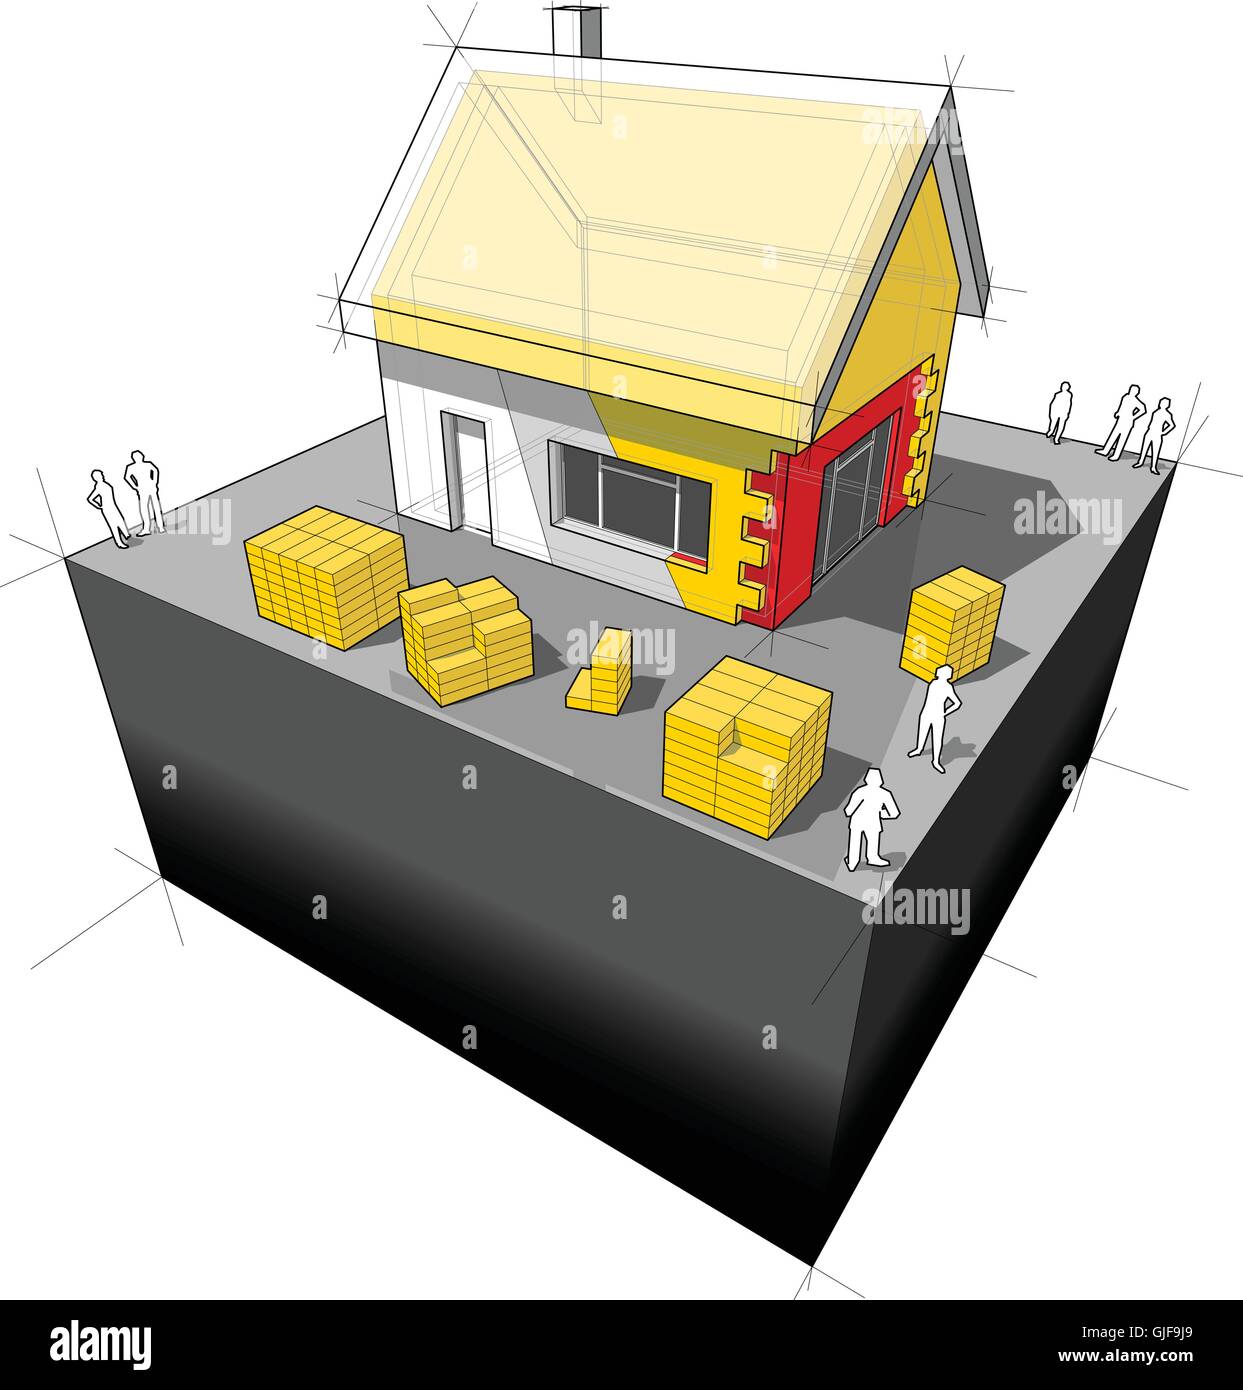 Schéma d'une maison individuelle avec l'isolation du toit et mur supplémentaires Illustration de Vecteur